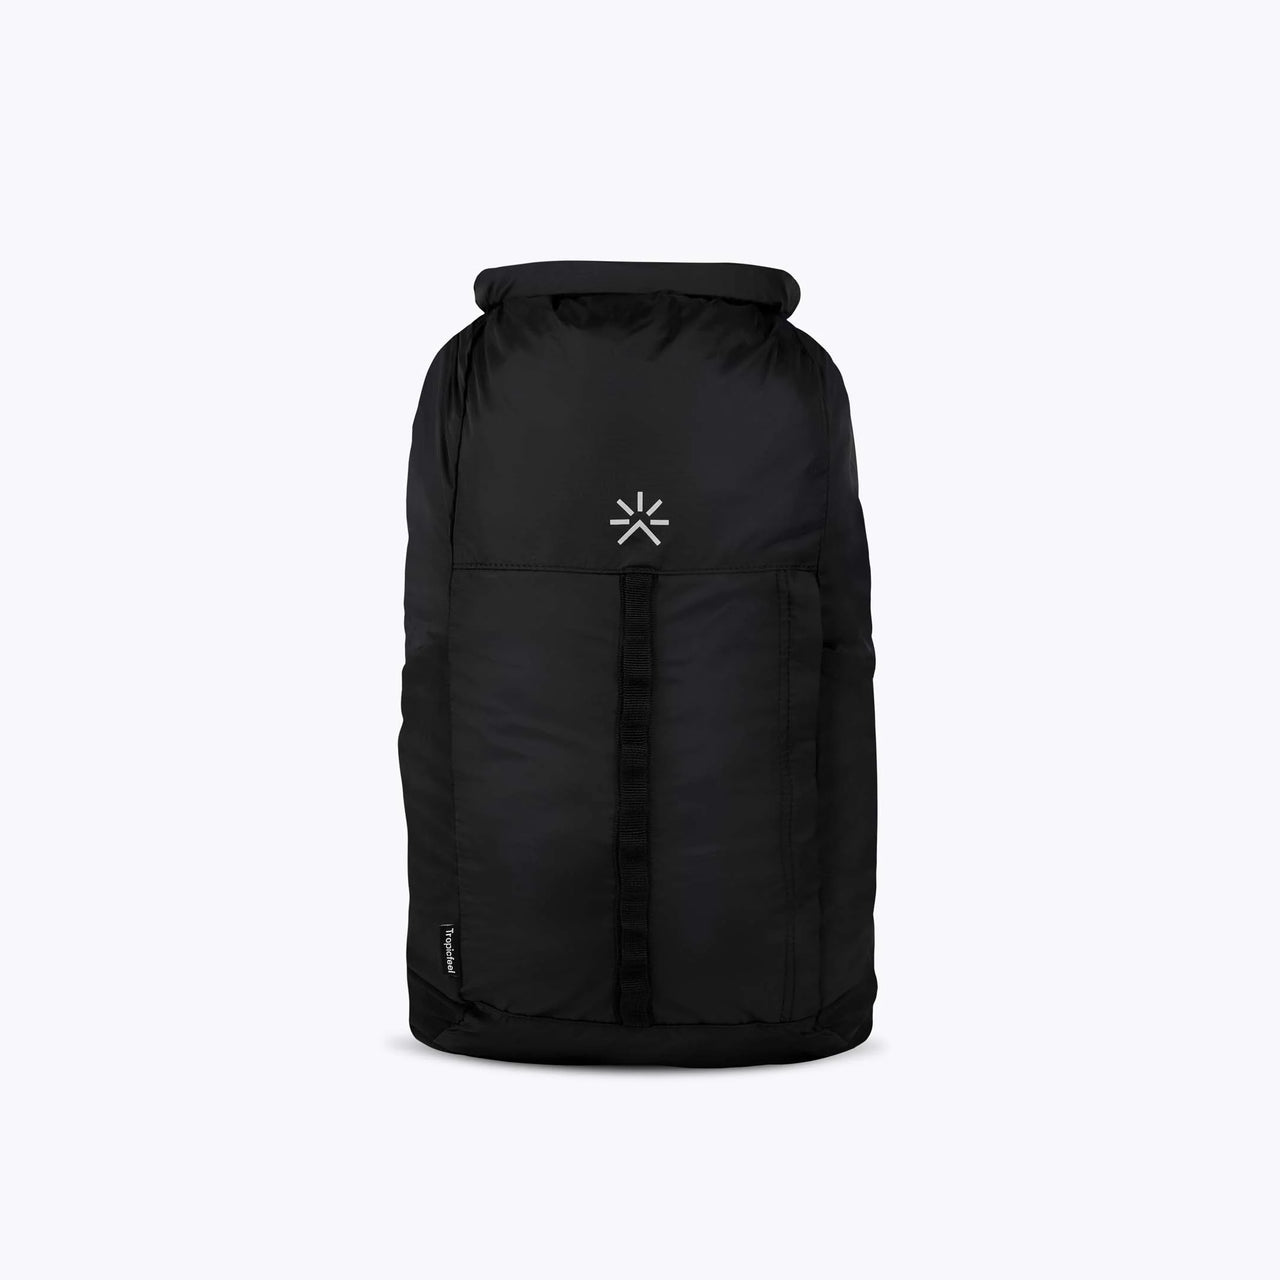 Tropicfeel - Packable Daypack